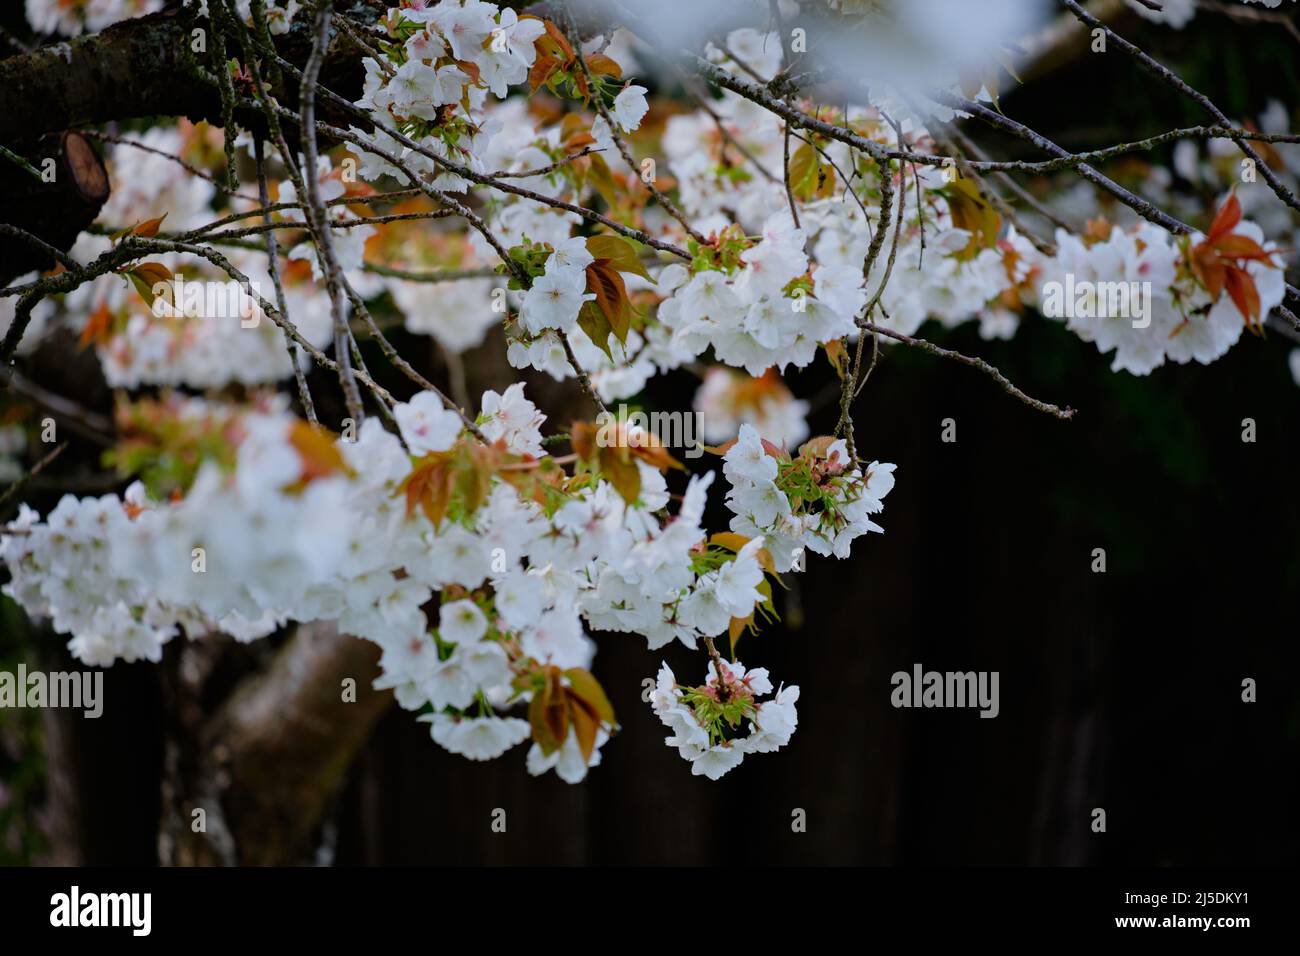 La profundidad de campo poco profunda captura delicadas flores de cerezos blancos in situ. El fondo oscuro proporciona espacio de copia y contraste. Foto de stock